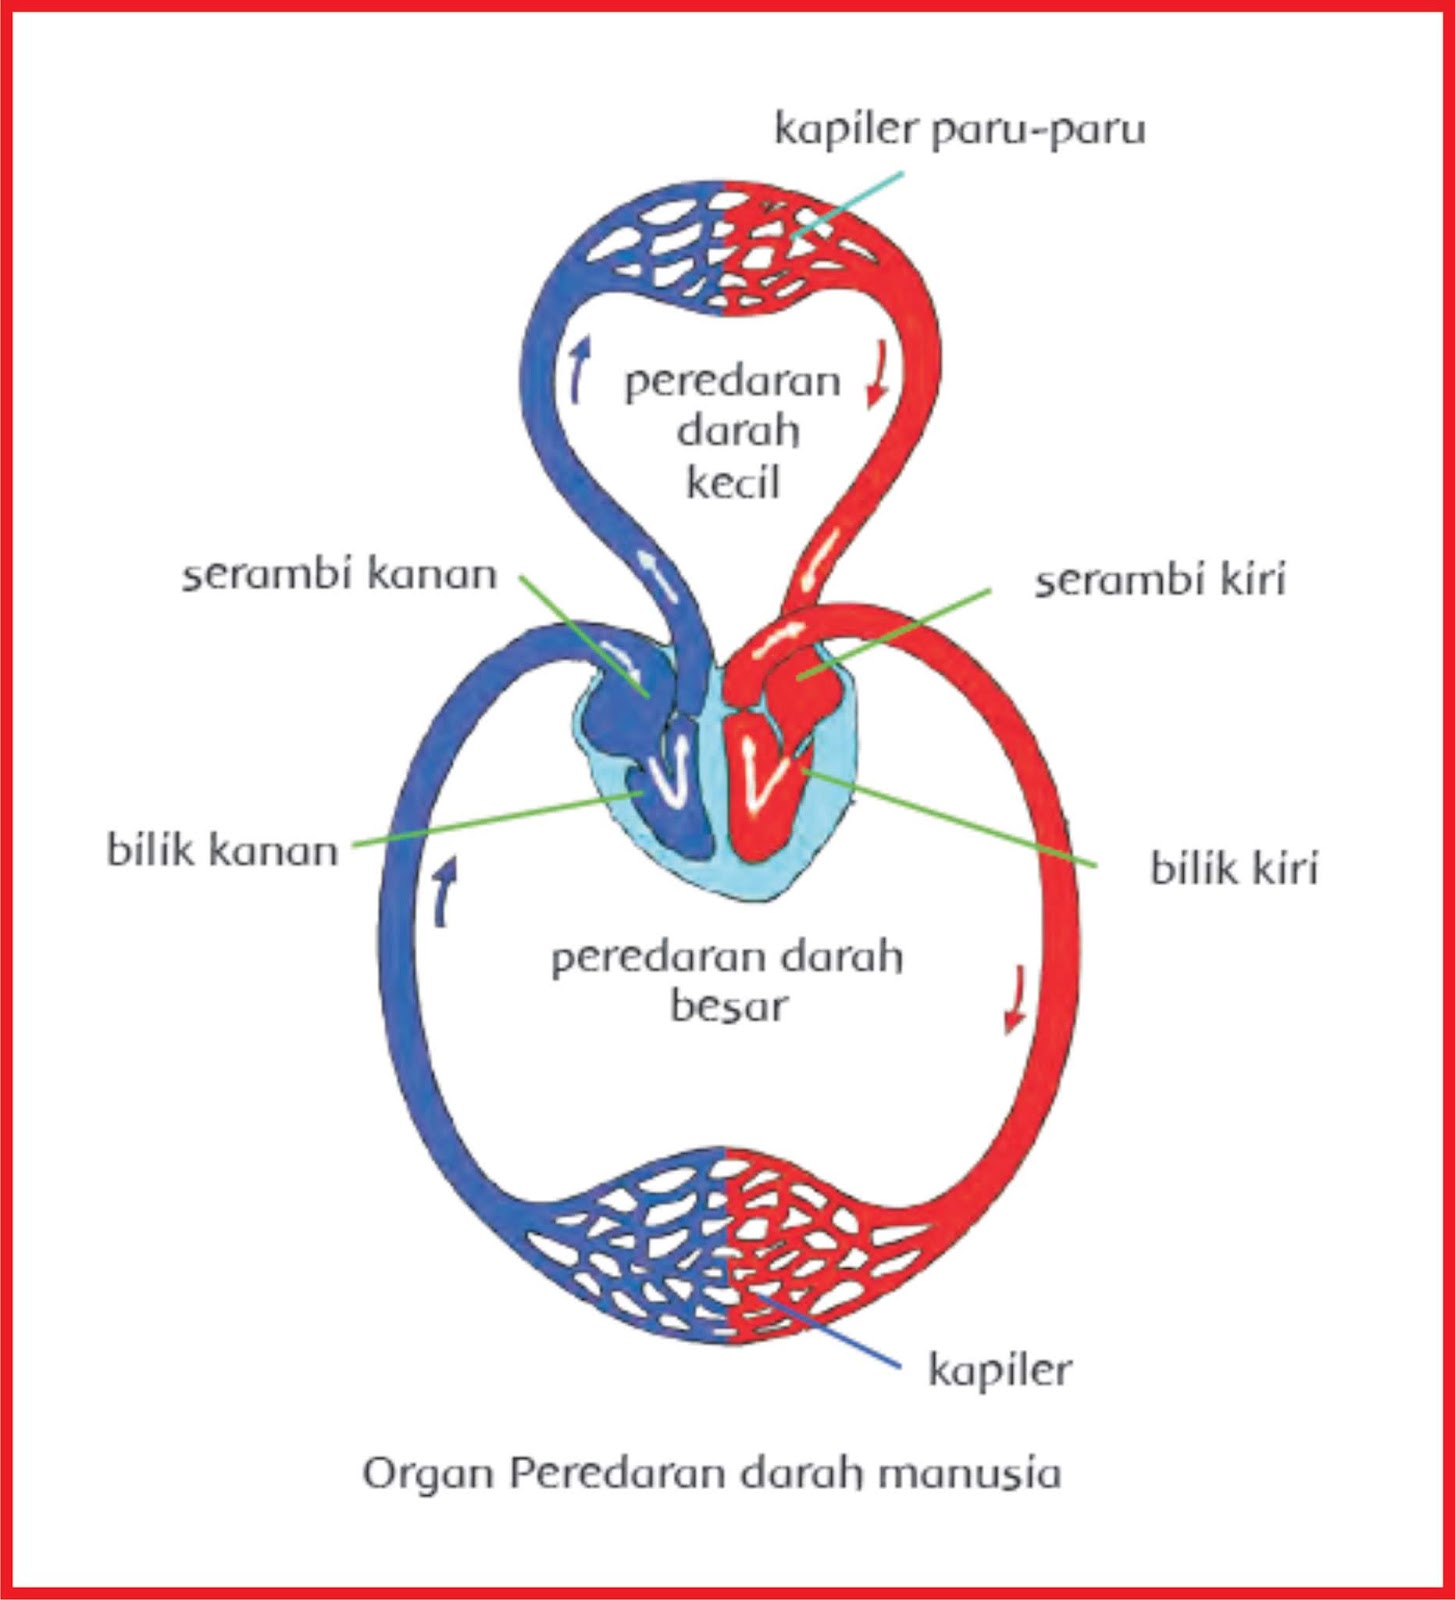 organ peredaran darah manusia